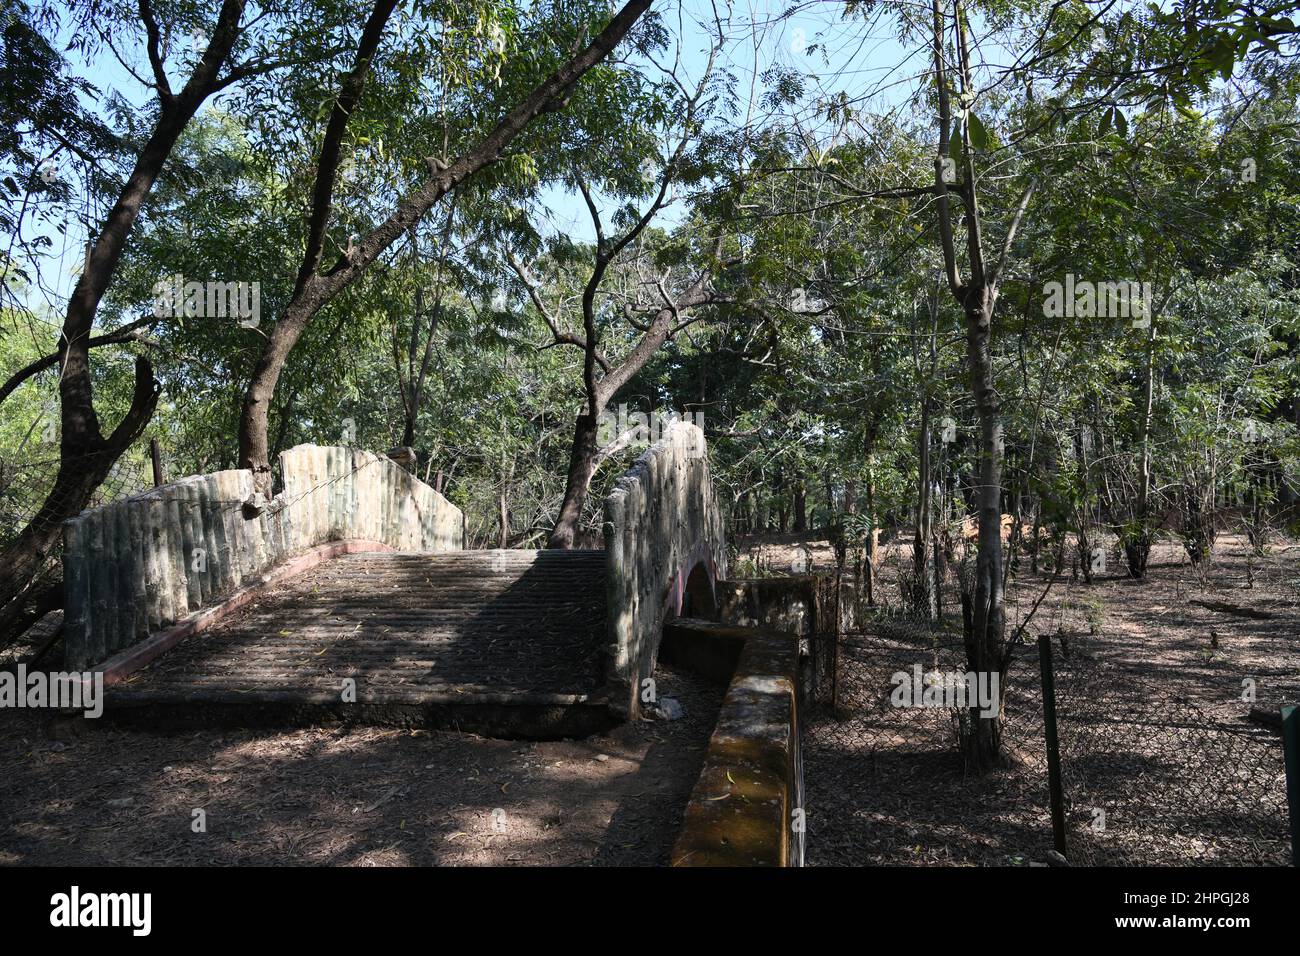 Footbridge of the Ballavpur Wildlife Sanctuary. Bolpur, Birbhum, West Bengal, India. Stock Photo